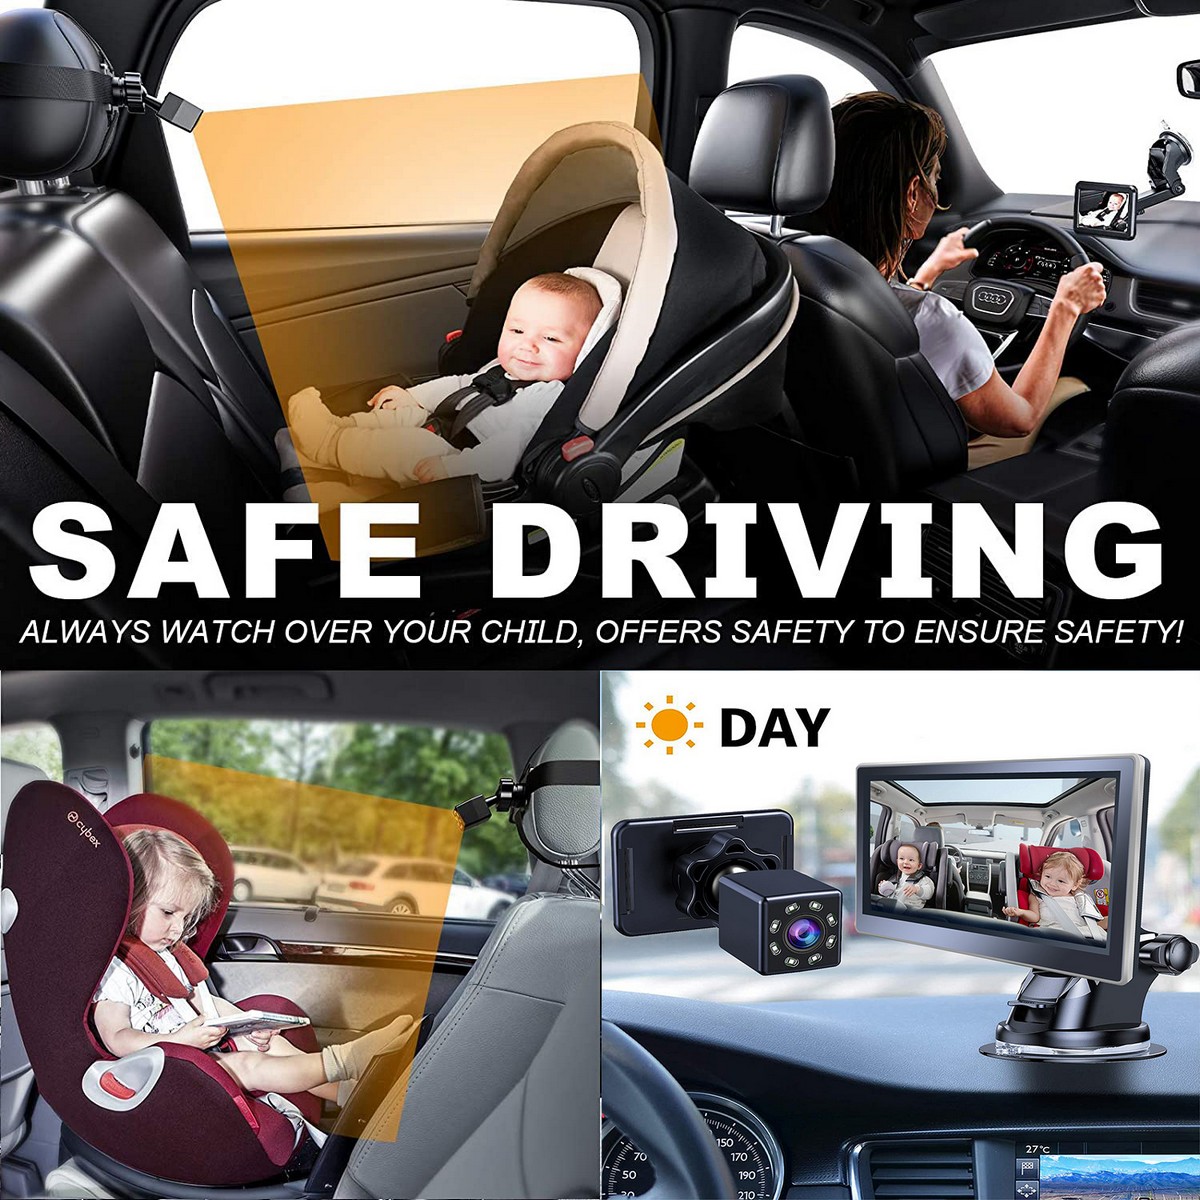 Kamerový systém pro monitorování dětí v autě